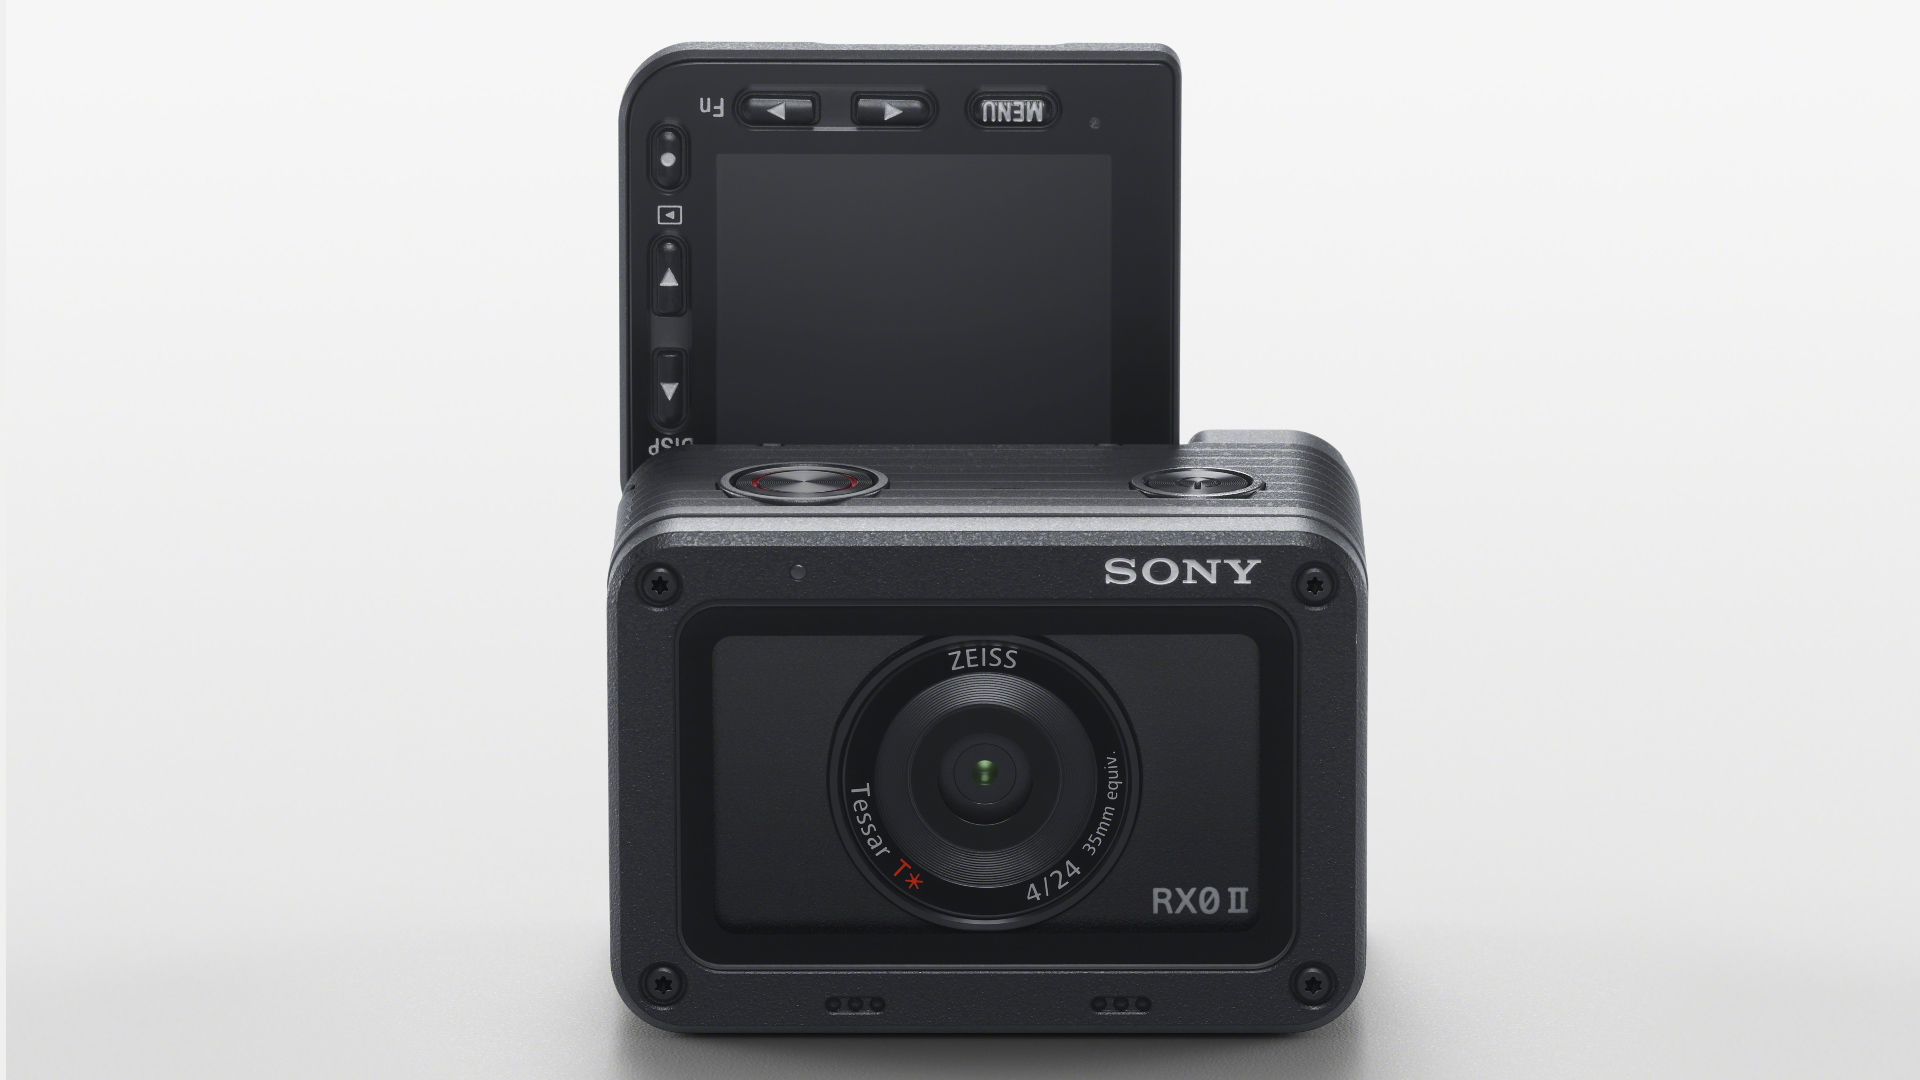 Sony RX0 II – Viene con grabación de video interna en 4K, estabilización de imagen y pantalla giratoria | CineD